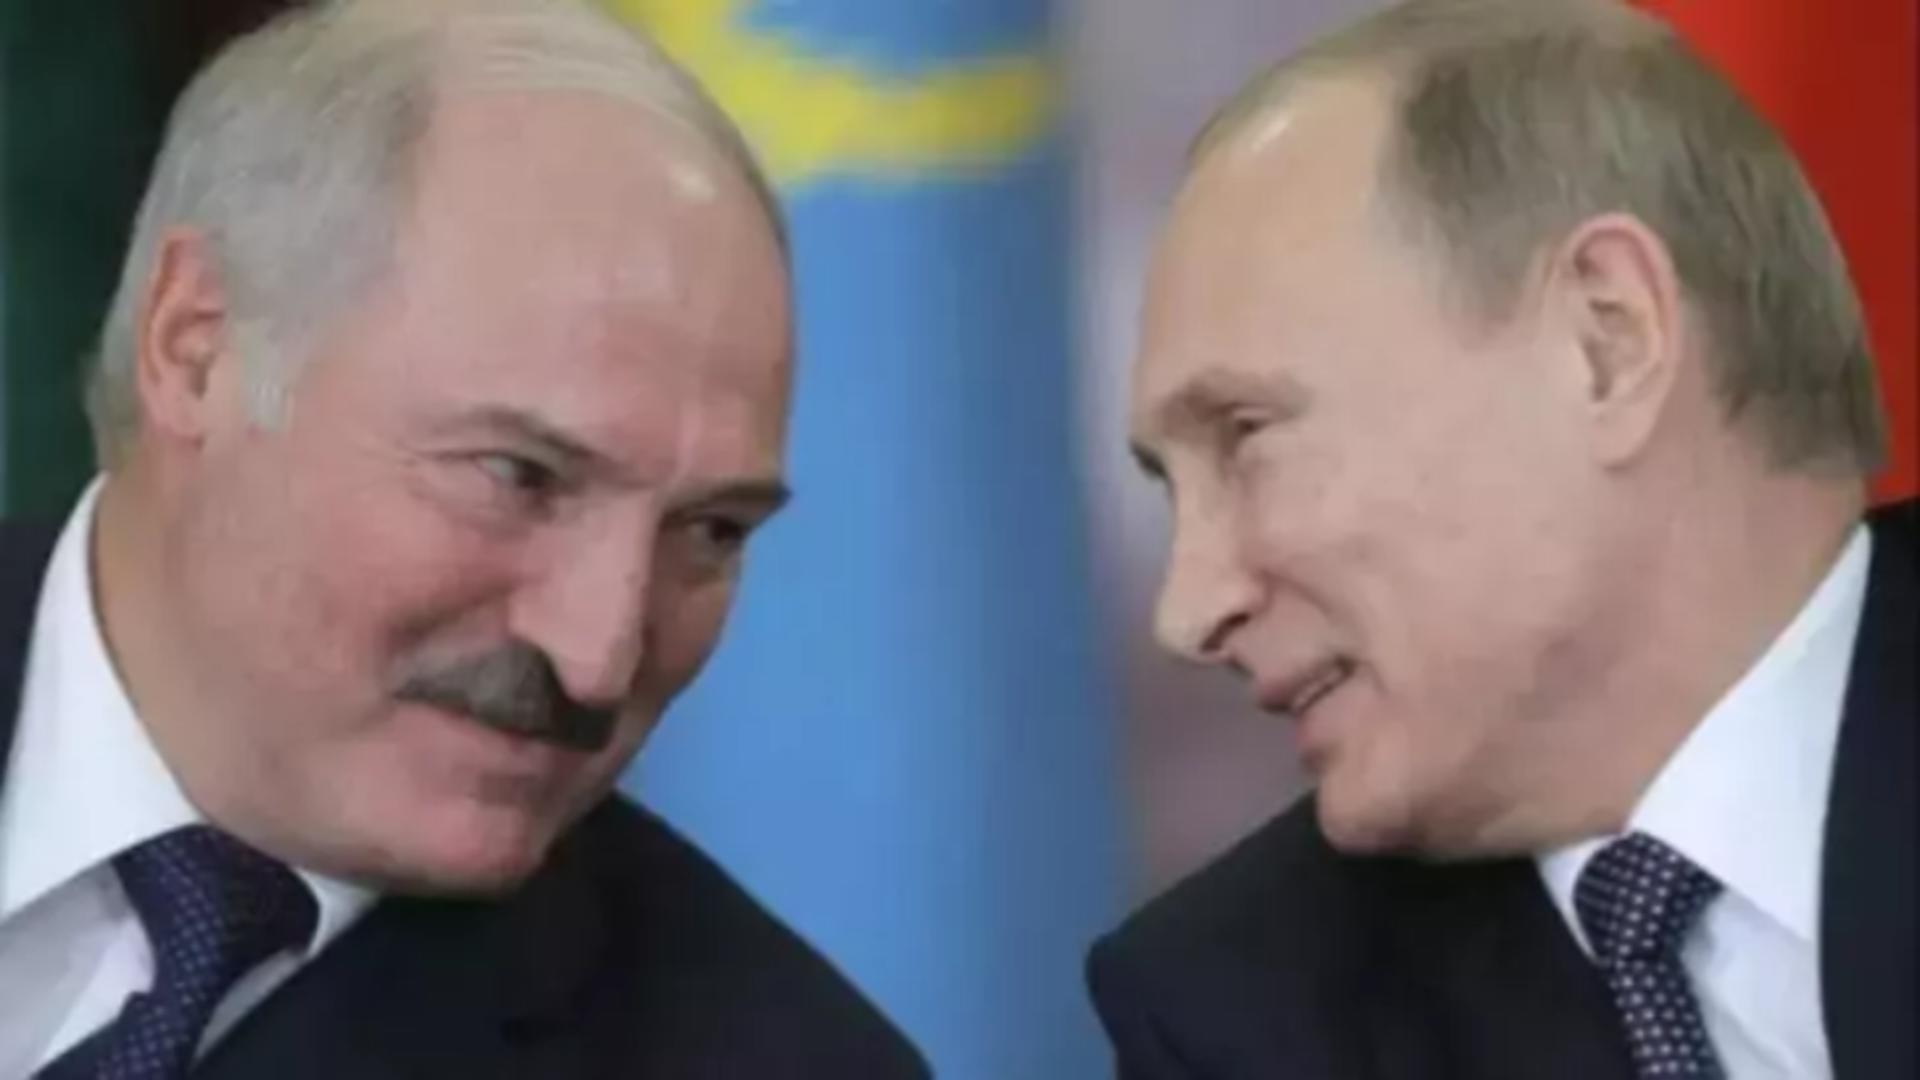 Alexandr Lukașenko ar putea primi mandat internațional de arestare, la fel ca bunul său prieten, Vladimir Putin  